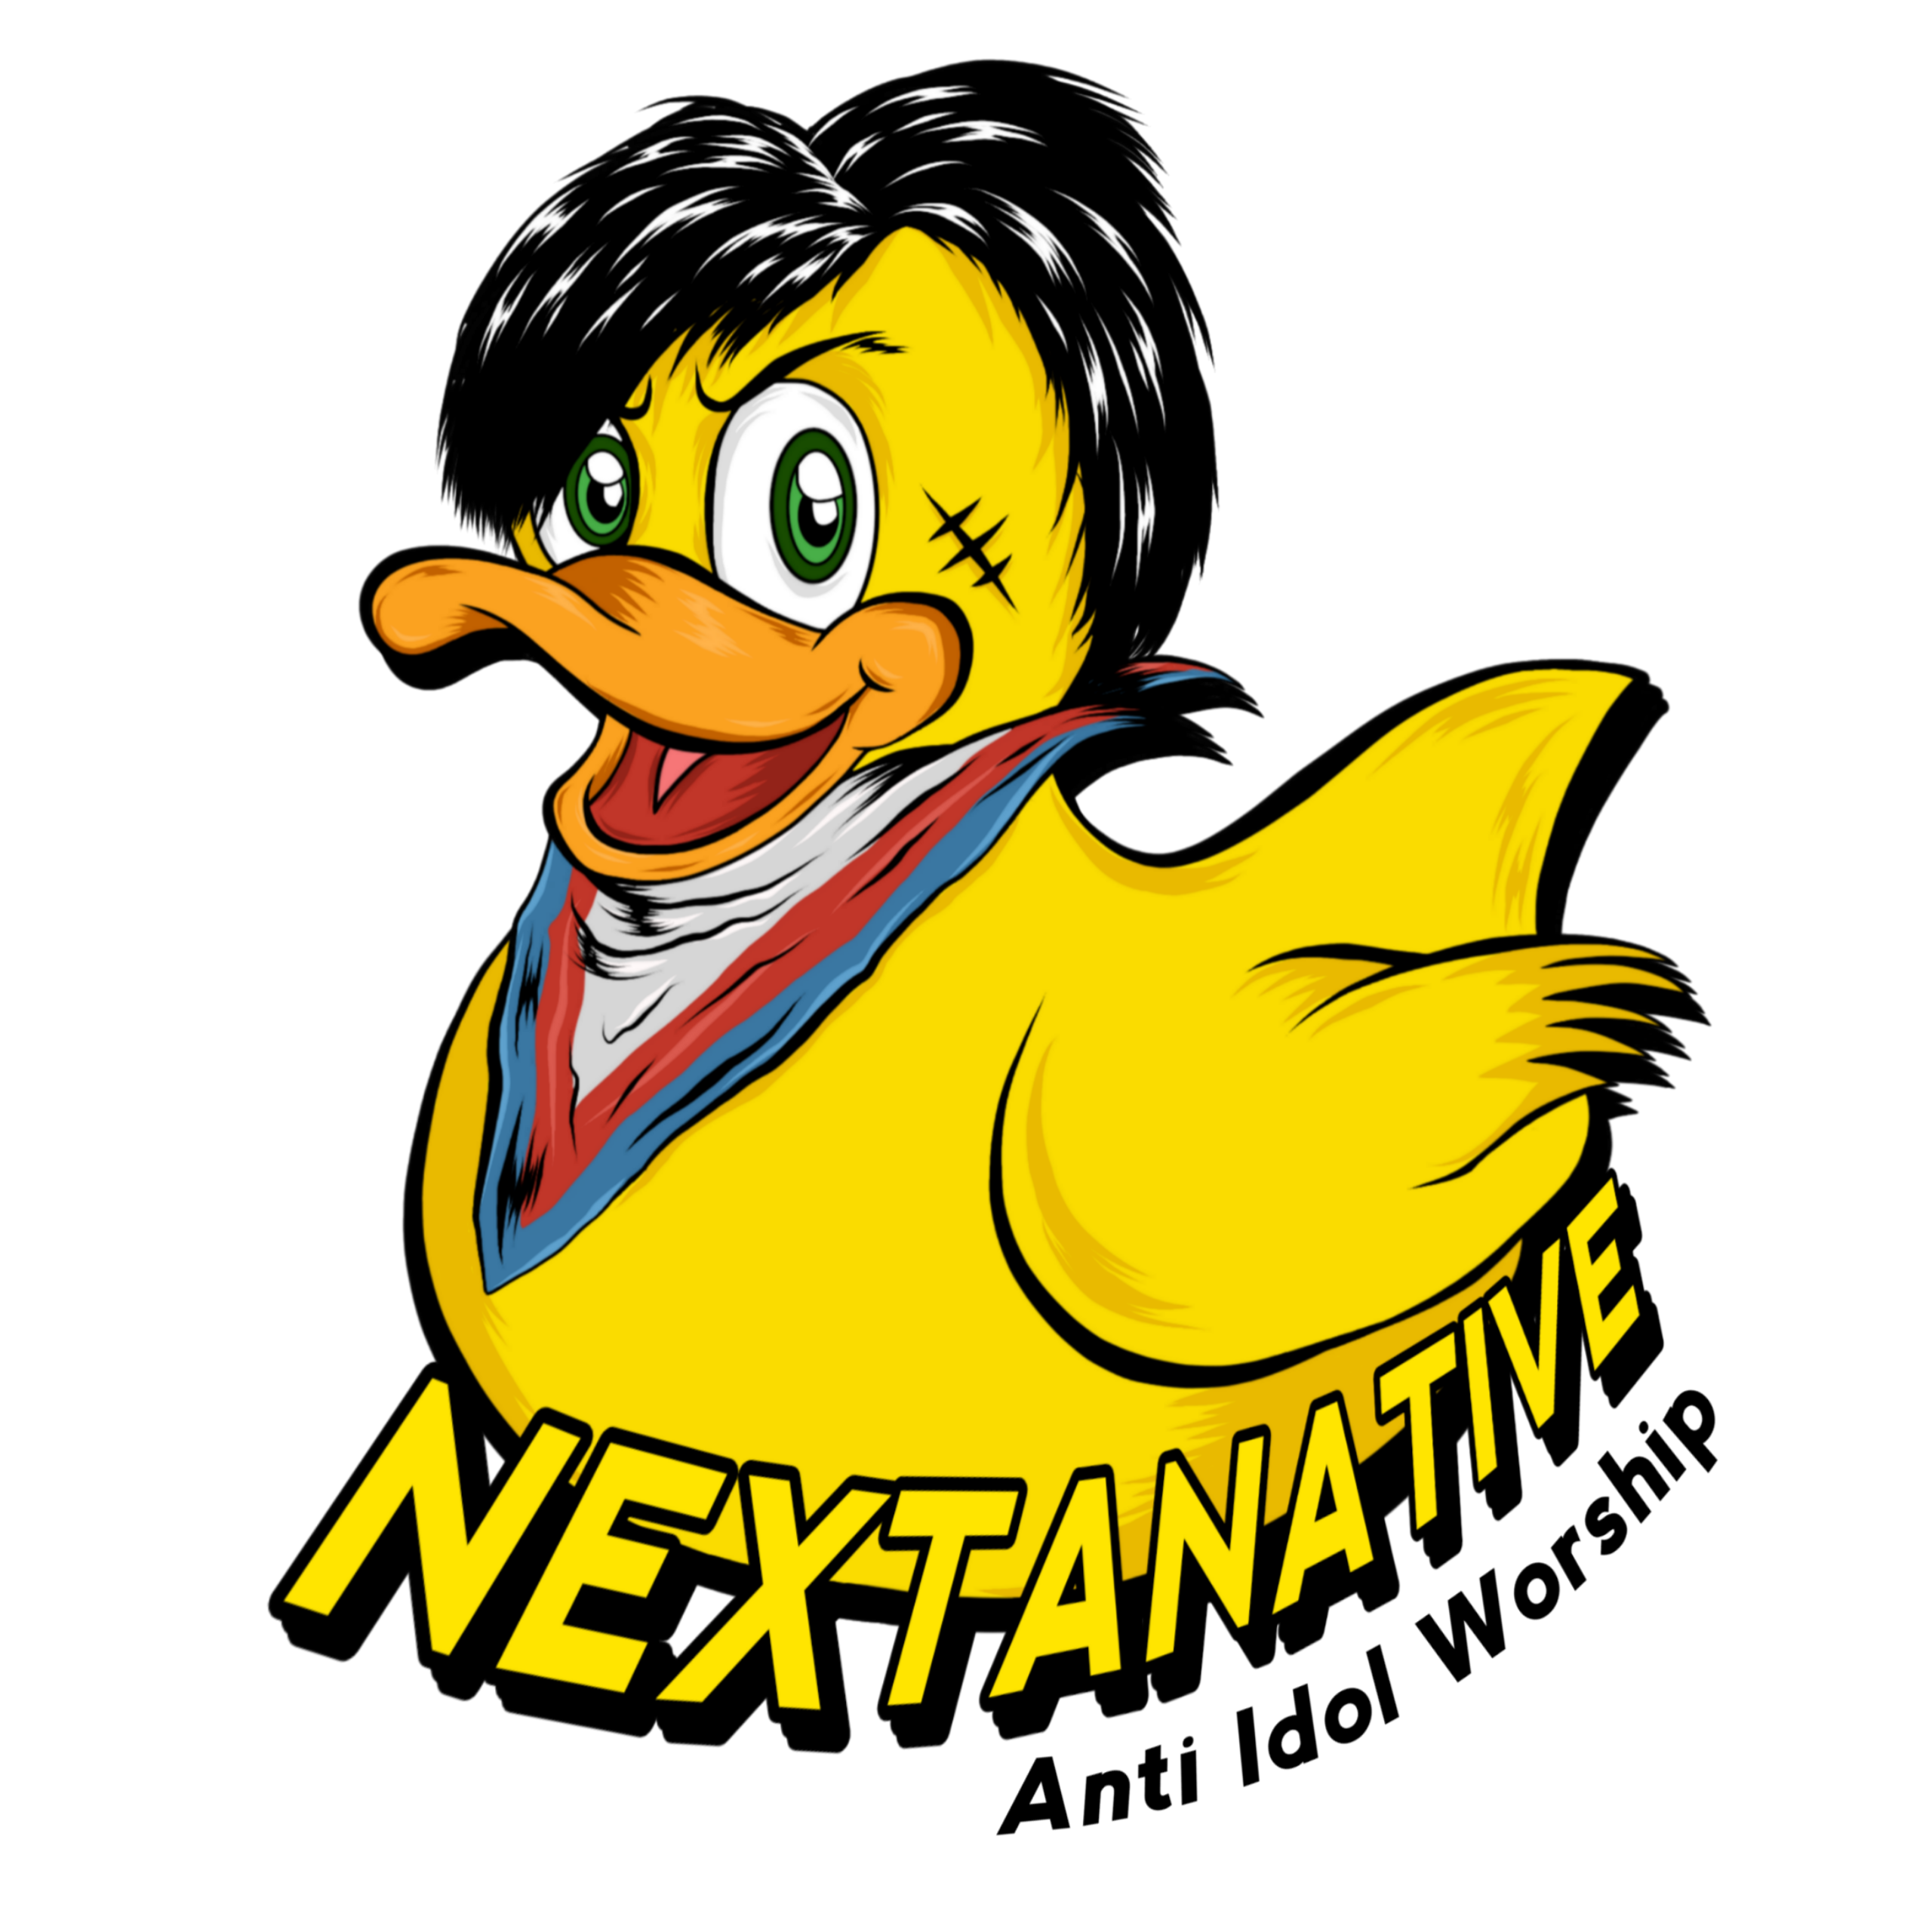 nextanative new logo